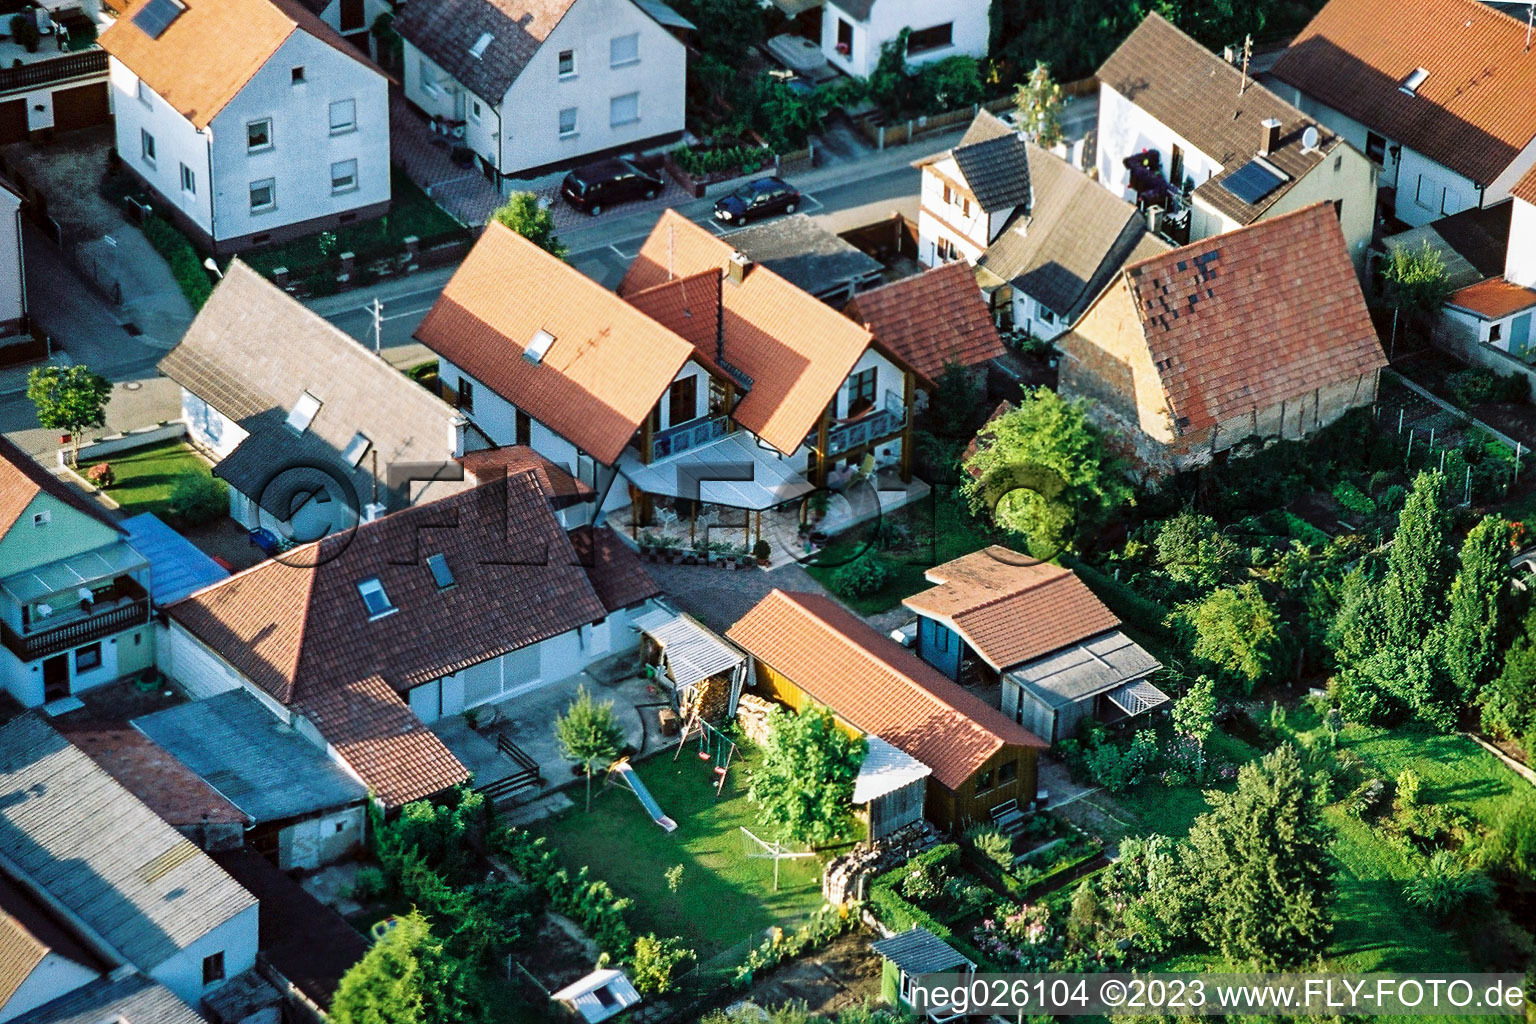 Freckenfeld Gänsried im Bundesland Rheinland-Pfalz, Deutschland von der Drohne aus gesehen